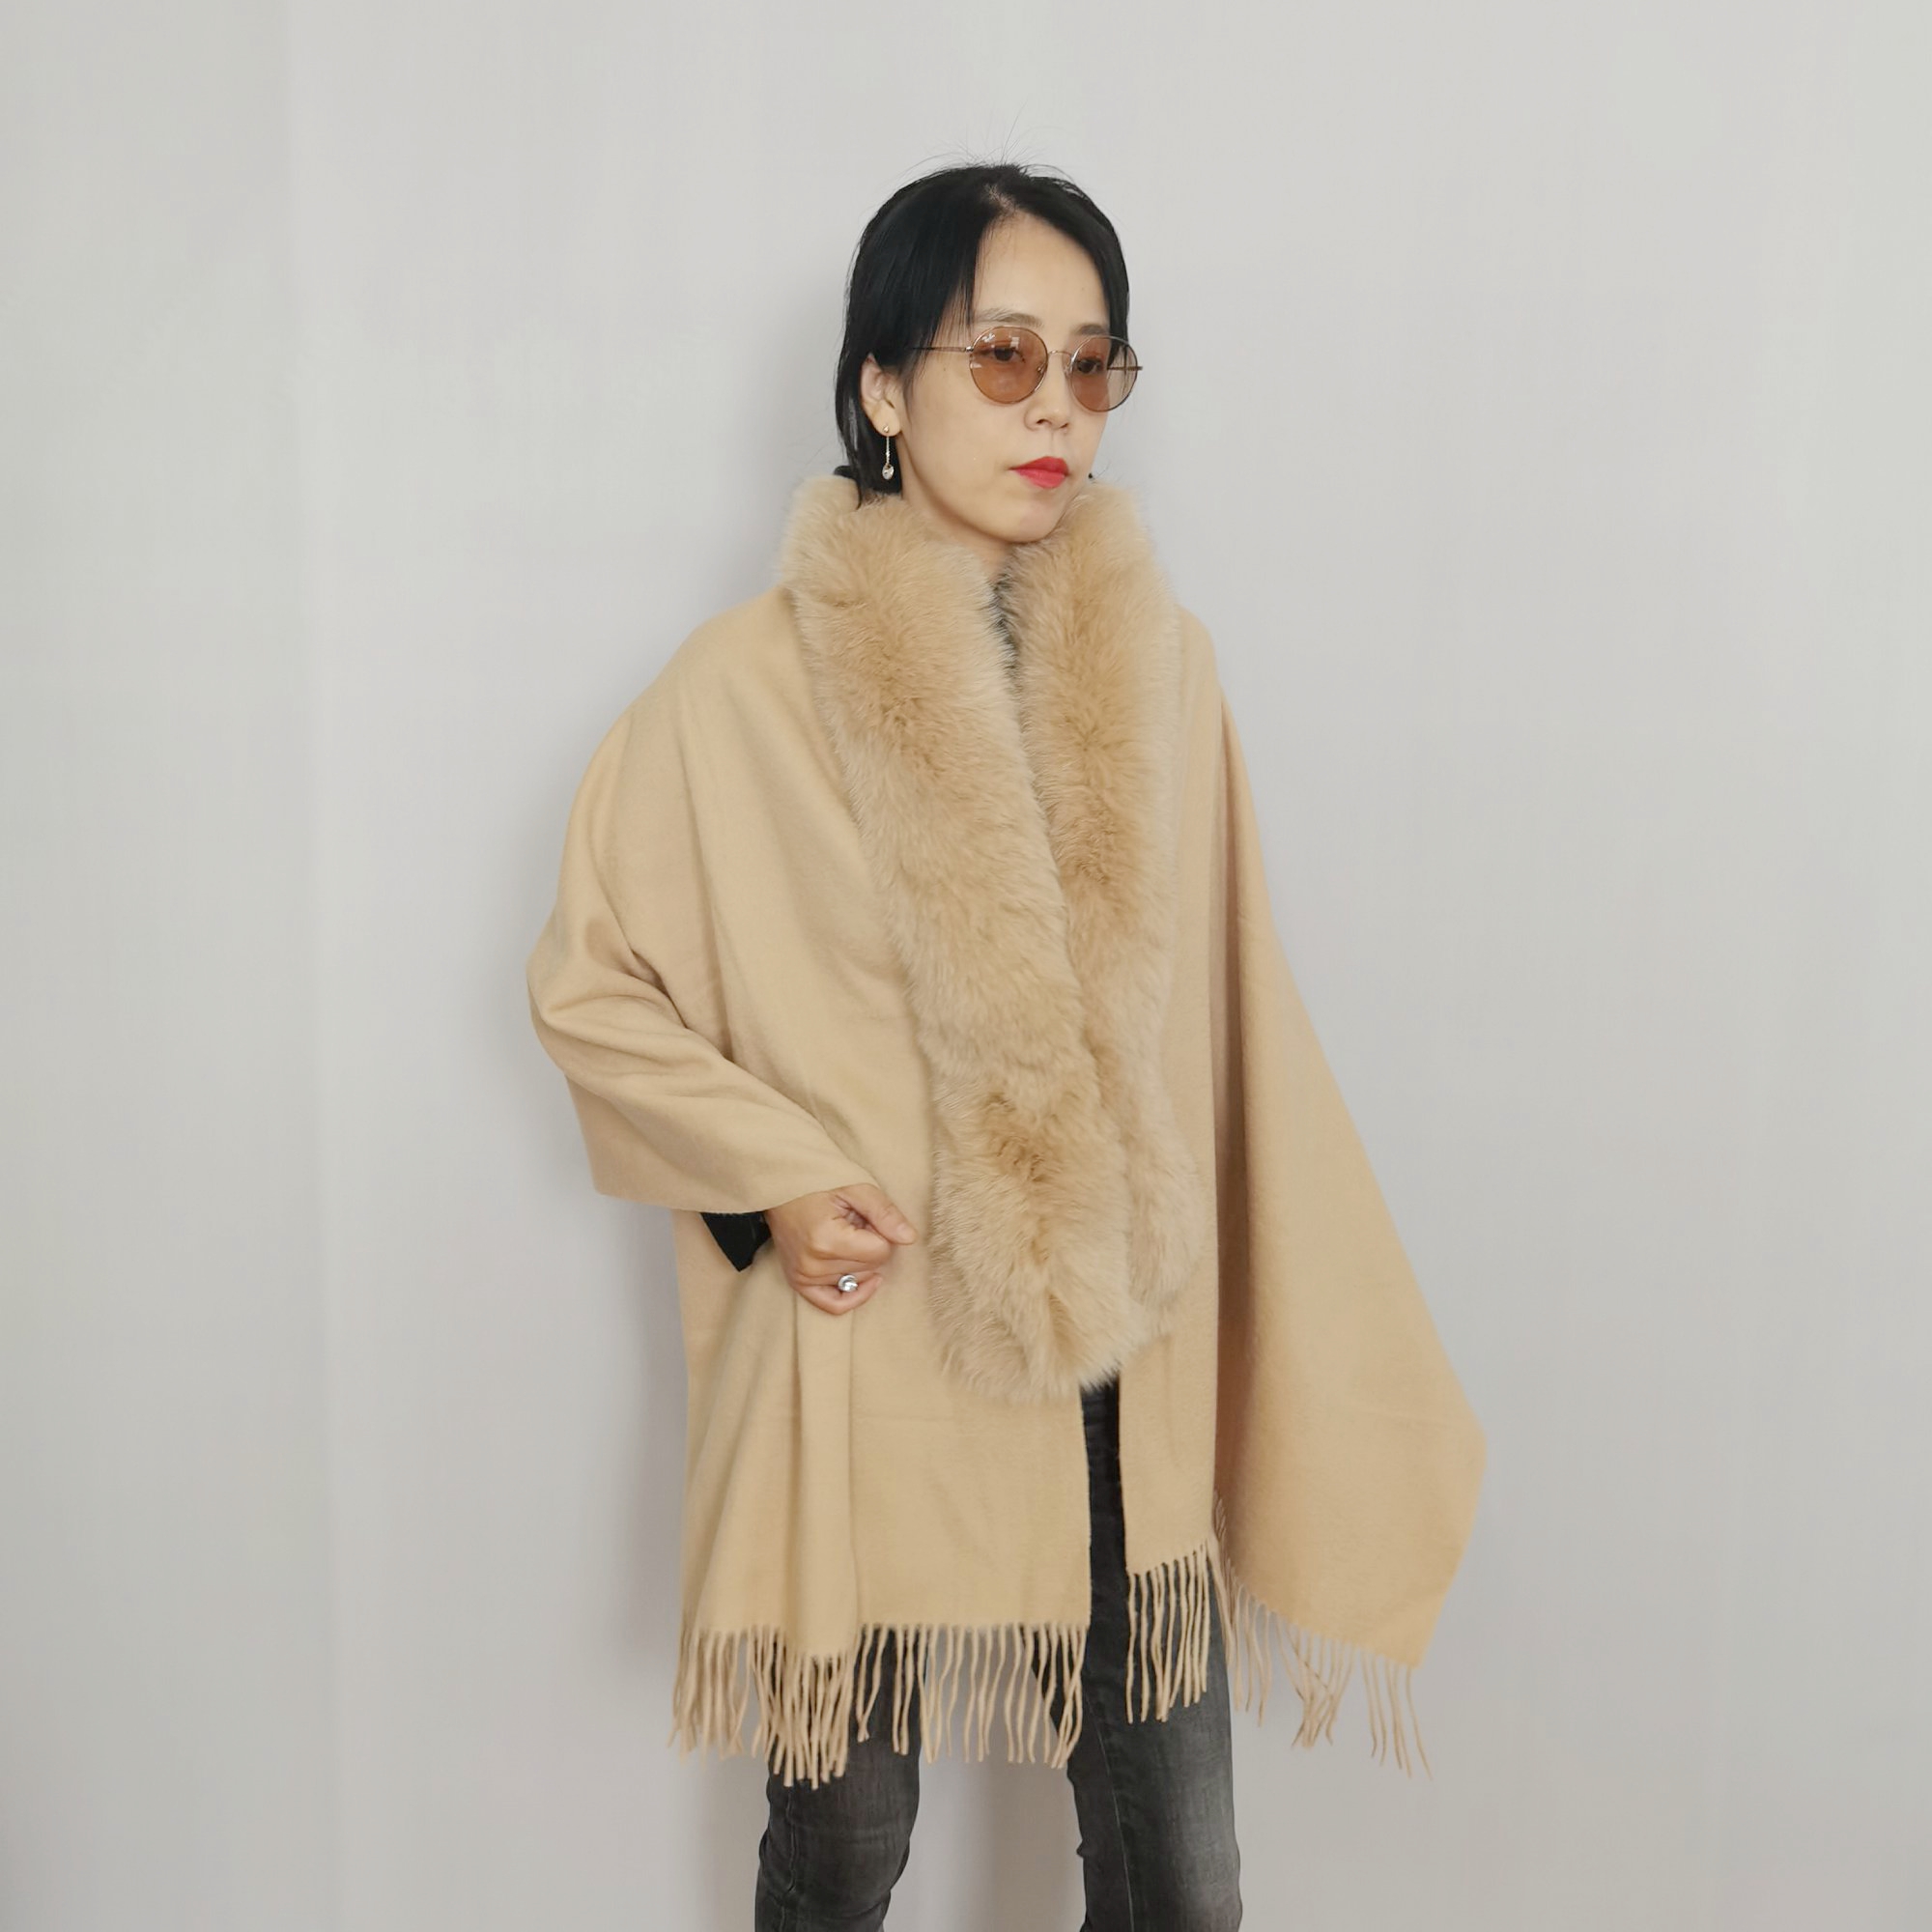 Toptan Kadınlar Kış Sıcak Özel kaşmir yün Hakiki Kore Sevimli Tarzı Kumaş Sahte Tilki Kürk pelerin bayan Sarar kadın kürk Şal